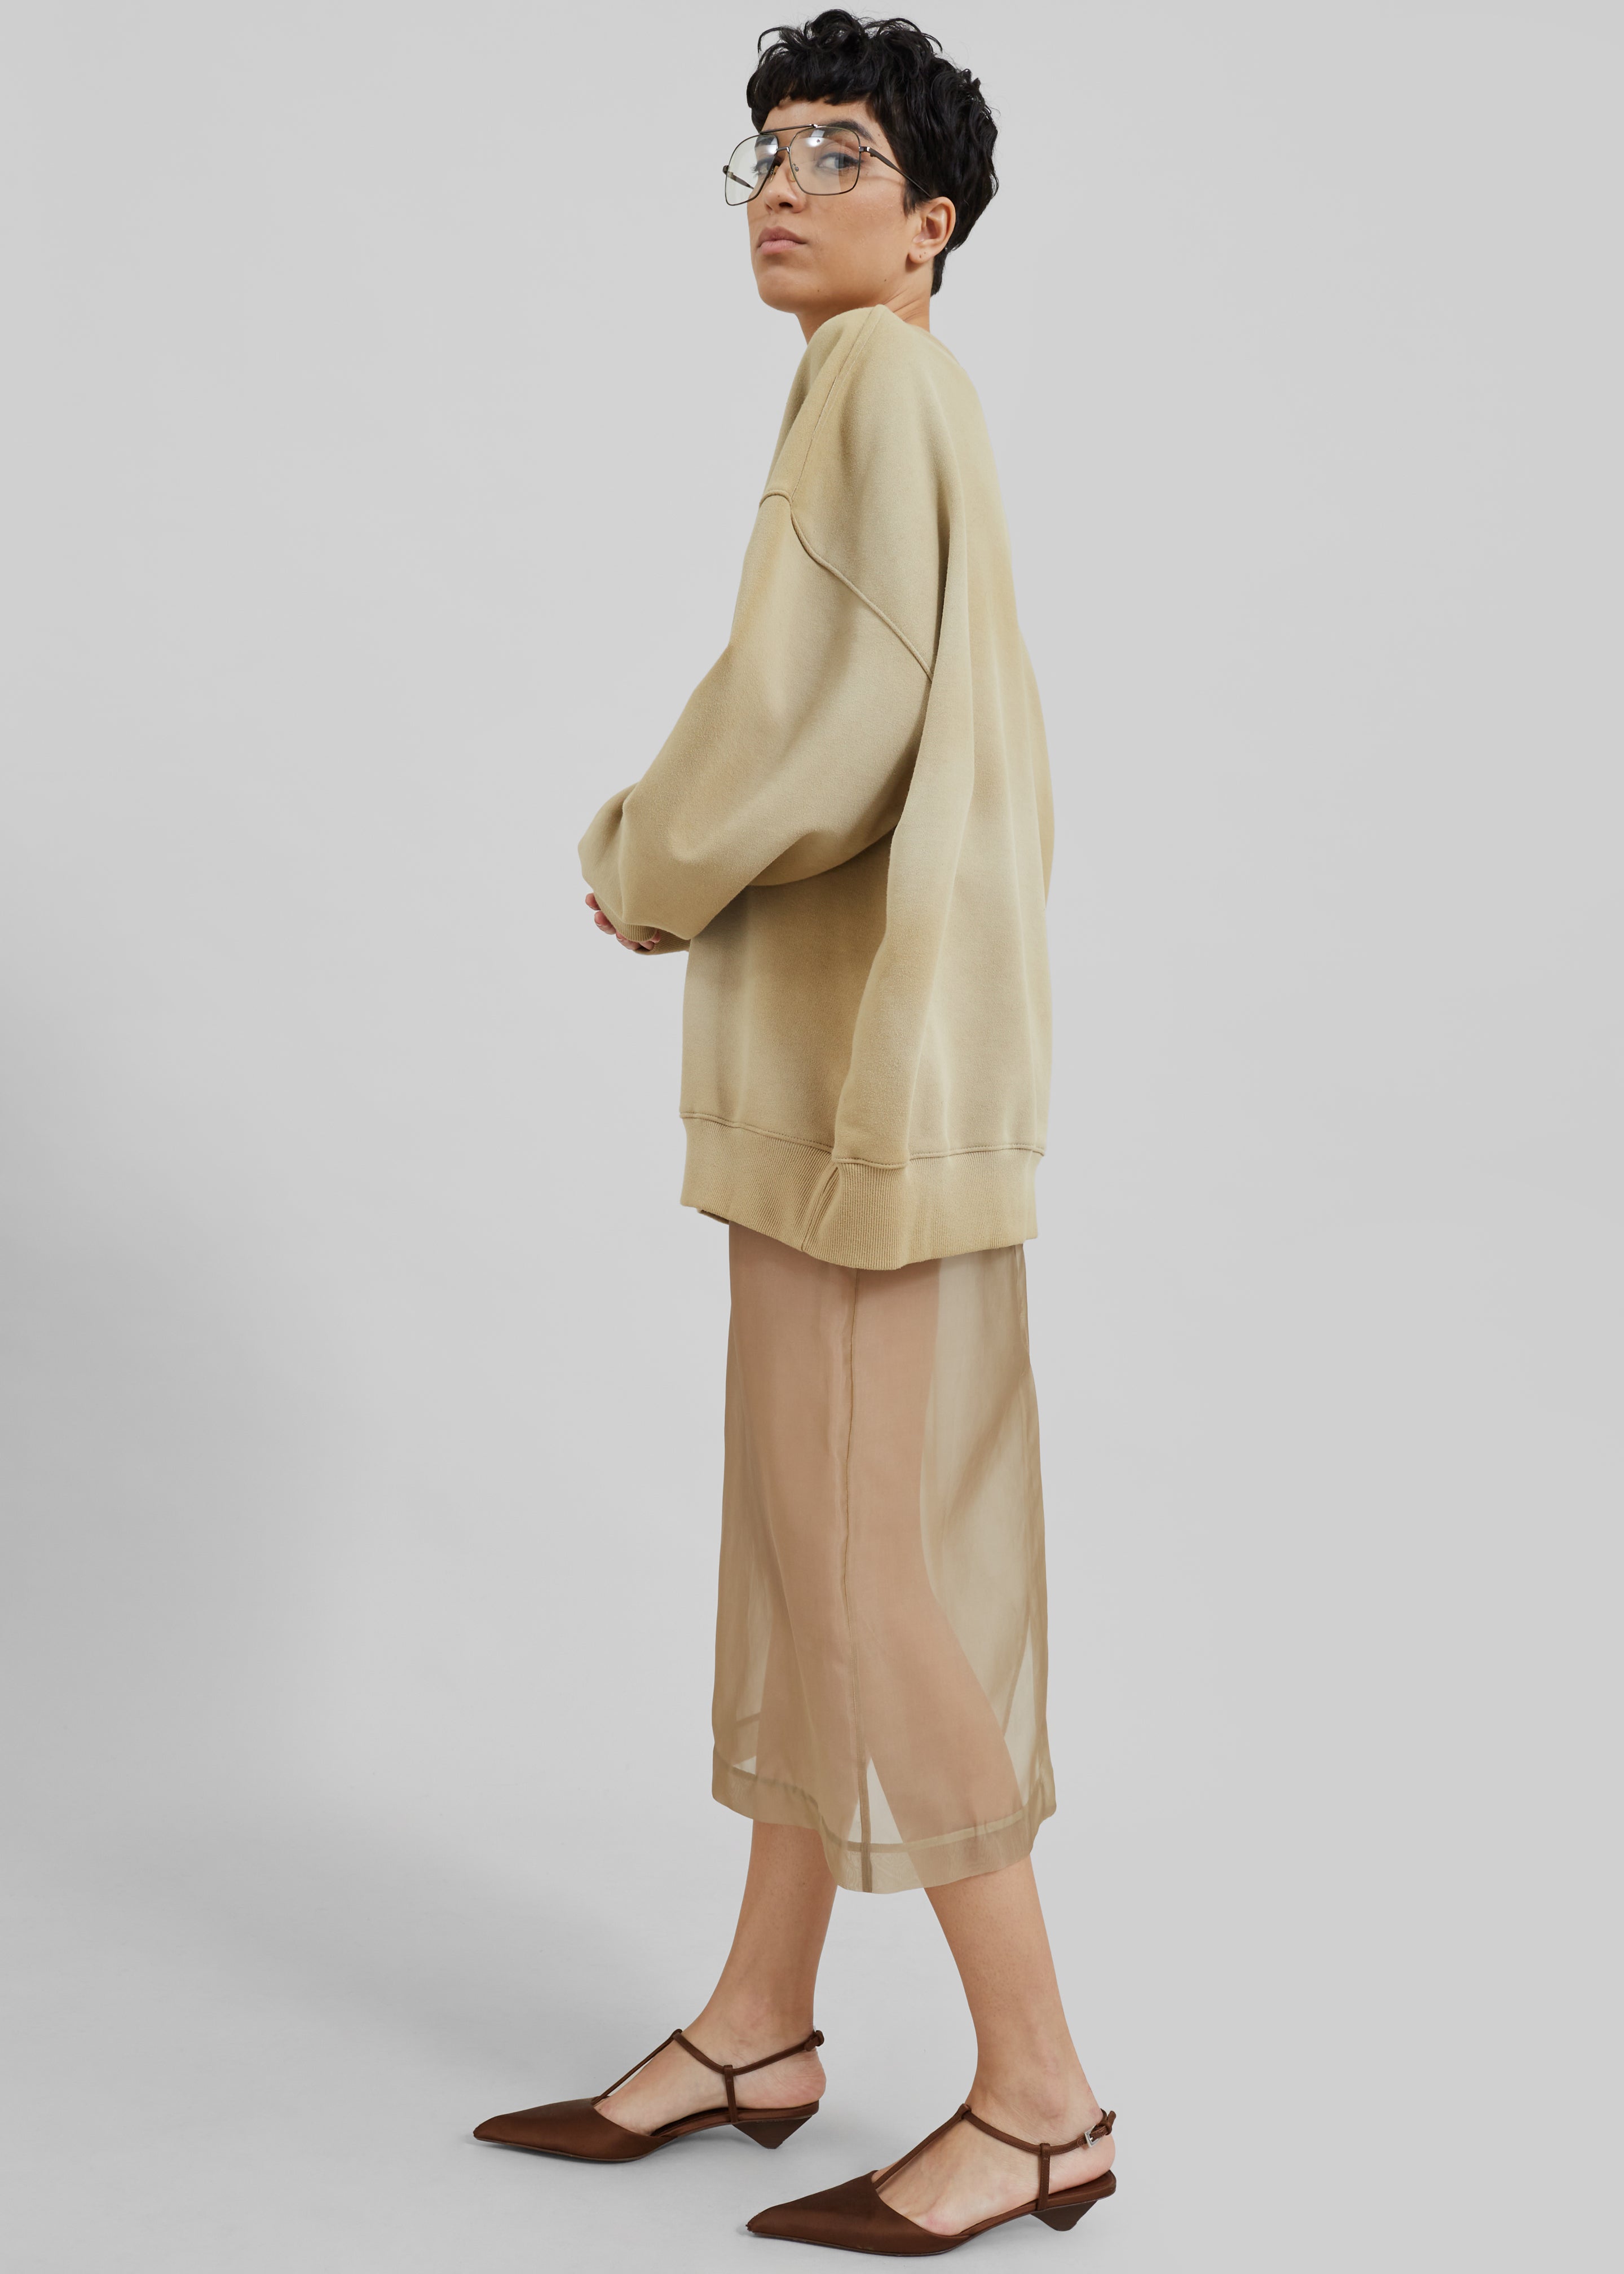 Peri Sheer Midi Skirt - Desert Sand - 10